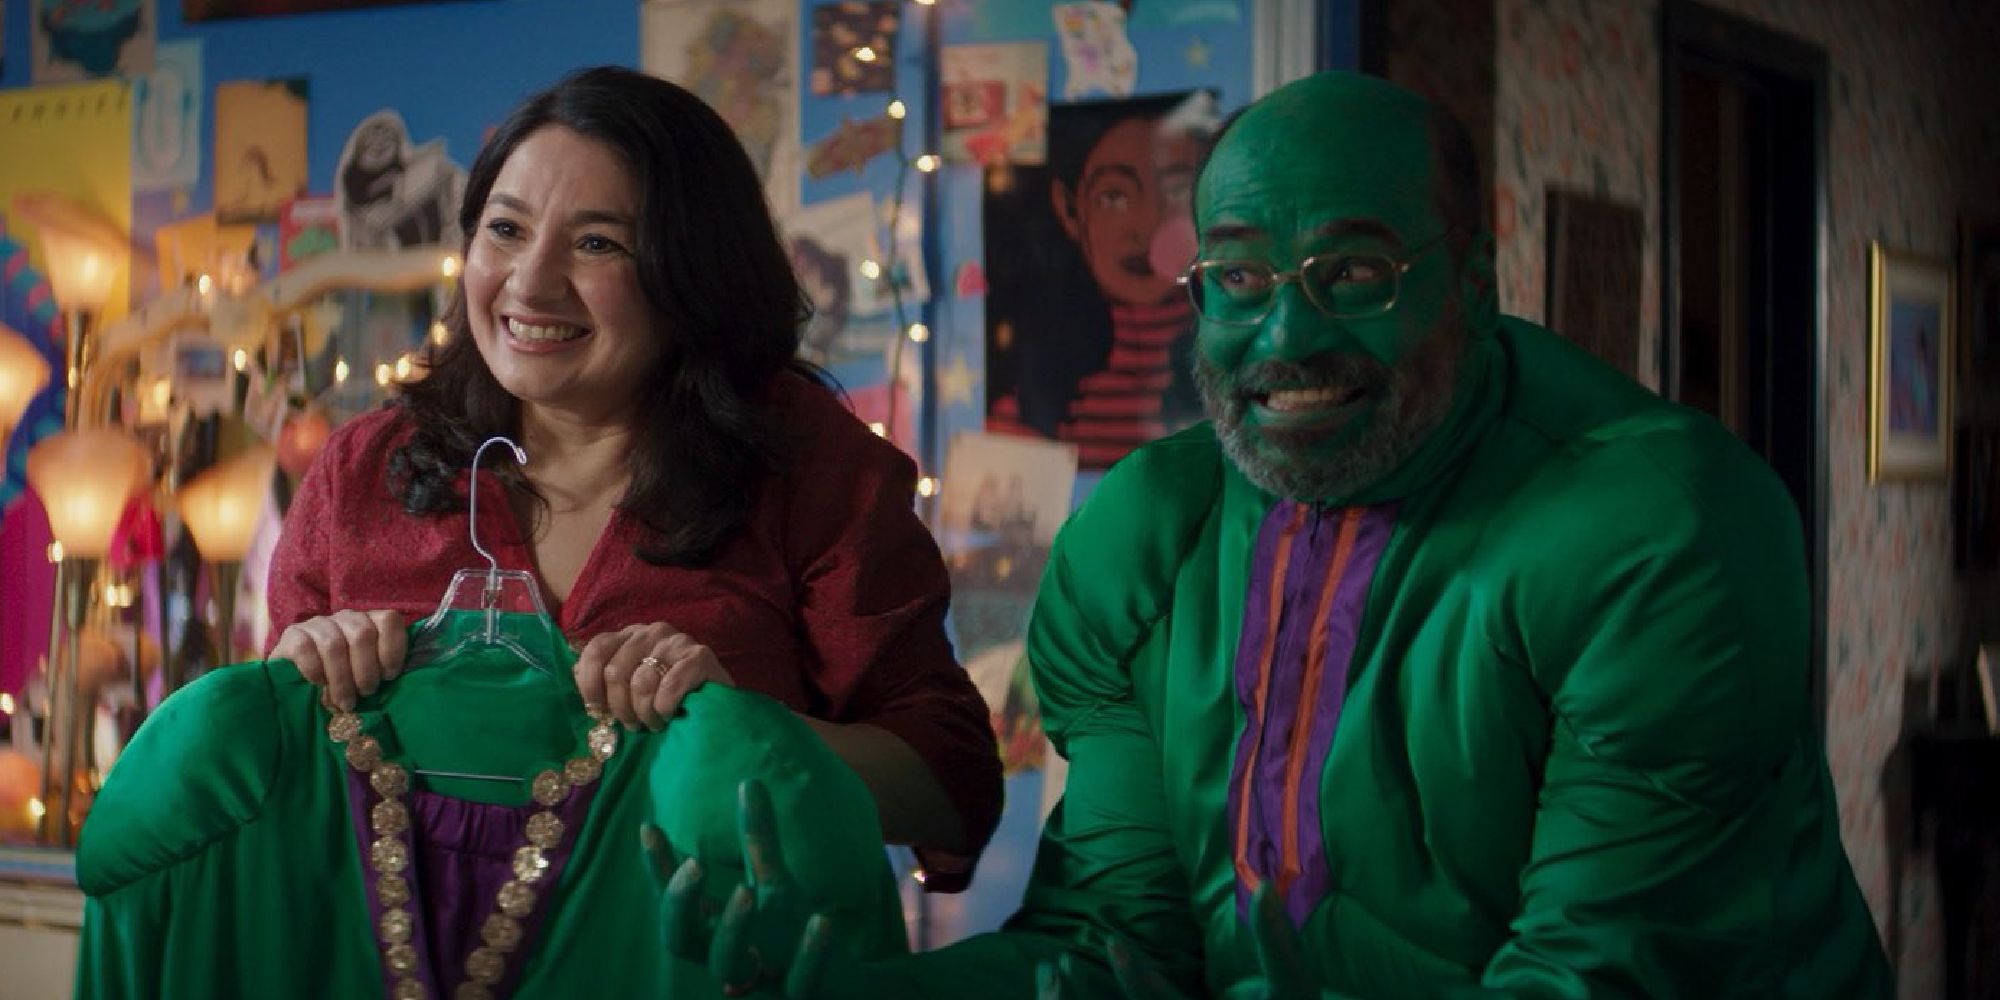 Kamala Khan's mom holding up a Hulk outfit next to Kamala's father dressed as the Hulk